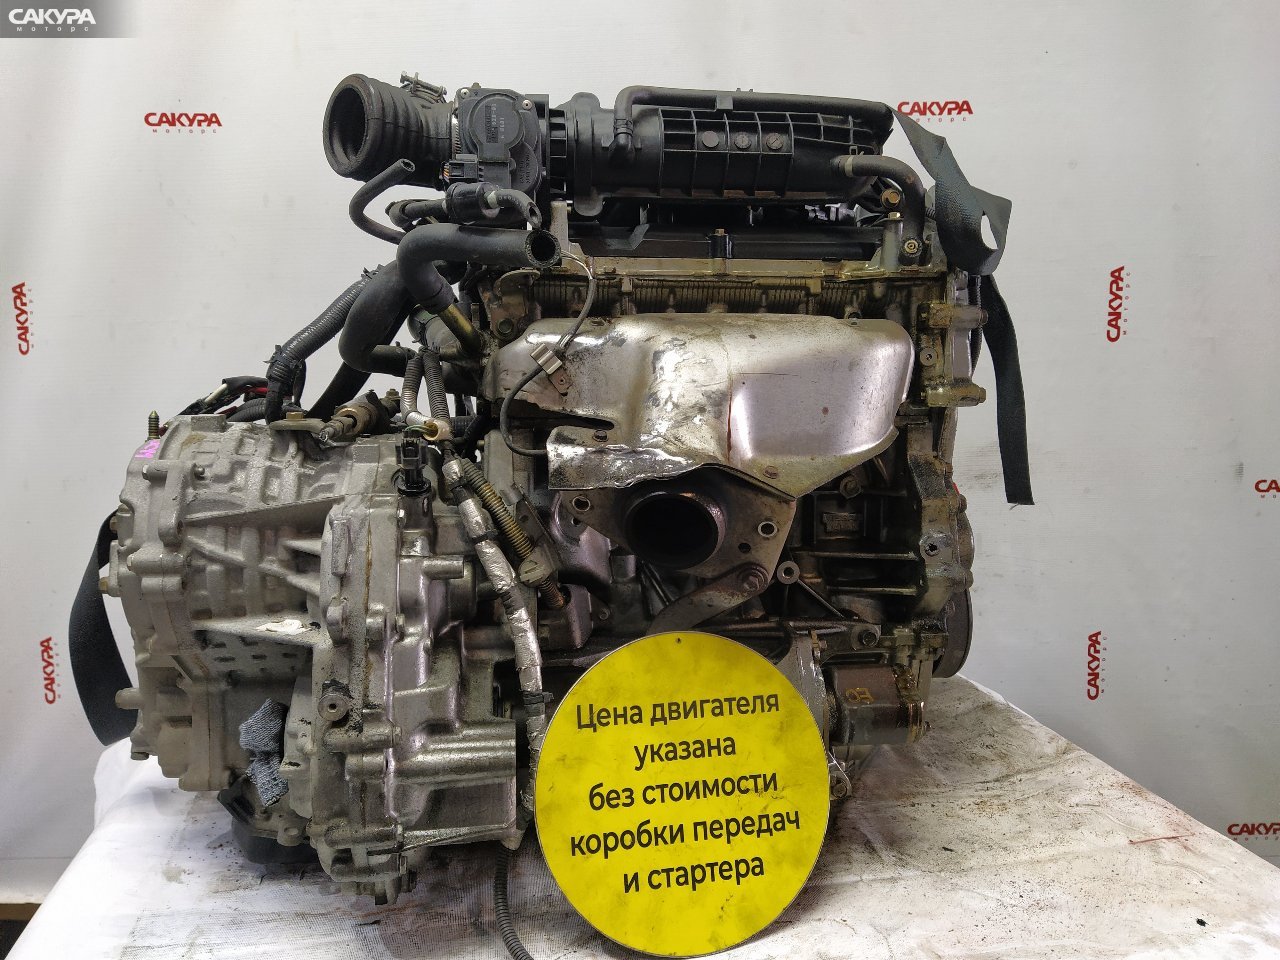 Двигатель Nissan Tiida JC11 MR18DE: купить в Сакура Красноярск.